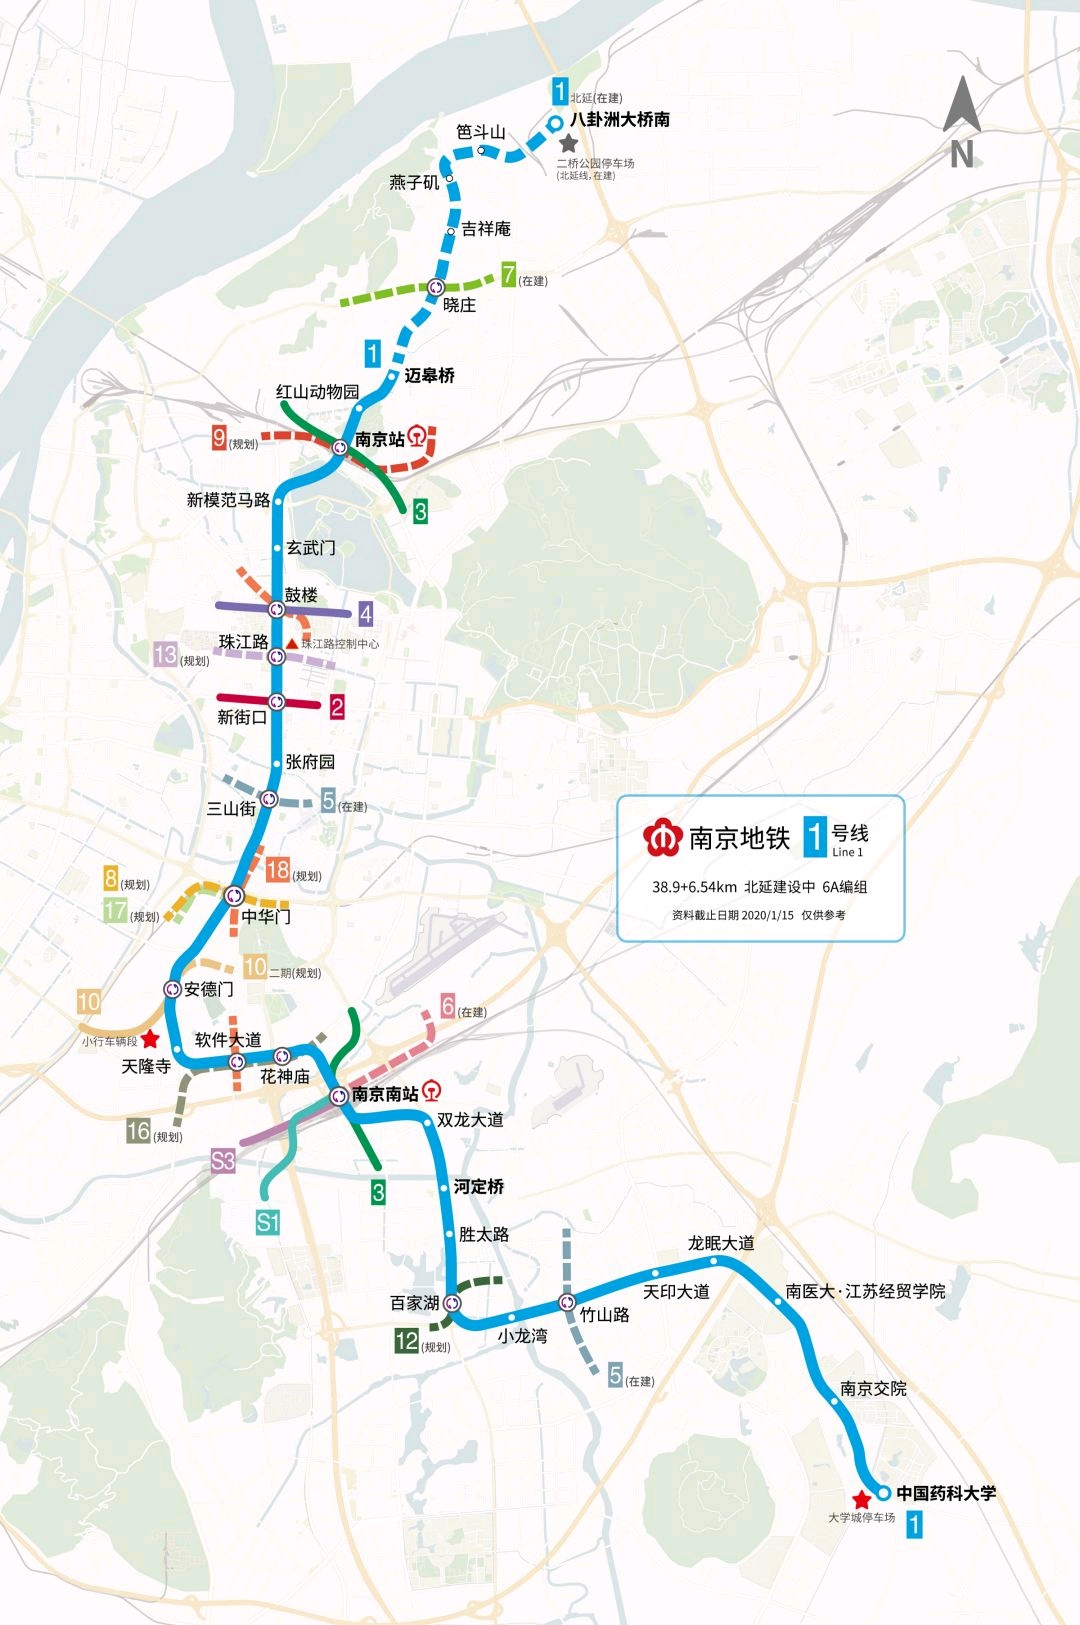 11号线即将开工,南京14条地铁线路要来!